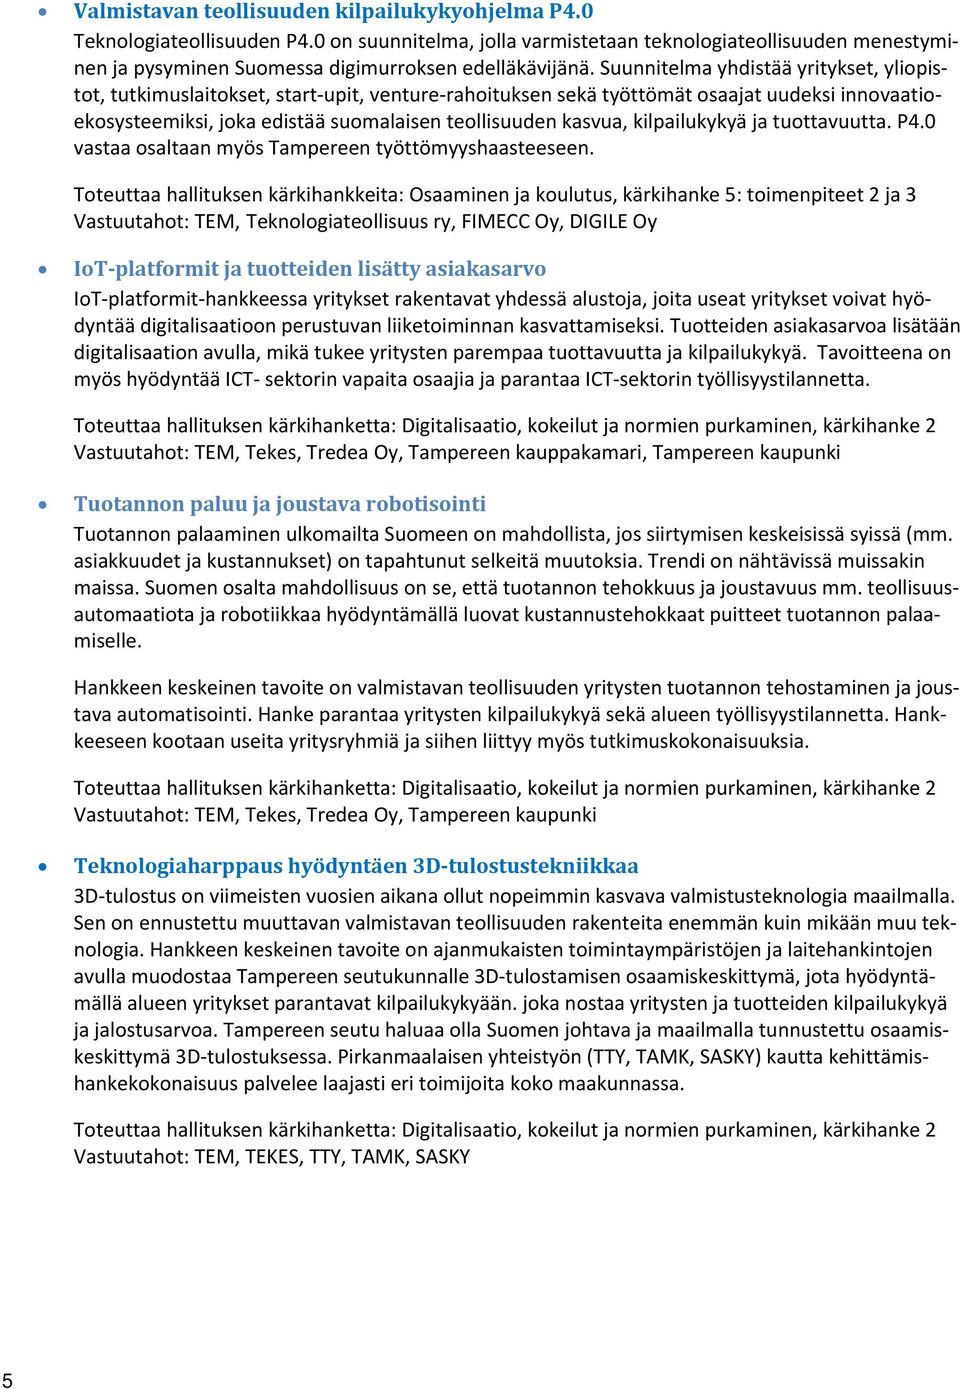 kilpailukykyä ja tuottavuutta. P4.0 vastaa osaltaan myös Tampereen työttömyyshaasteeseen.